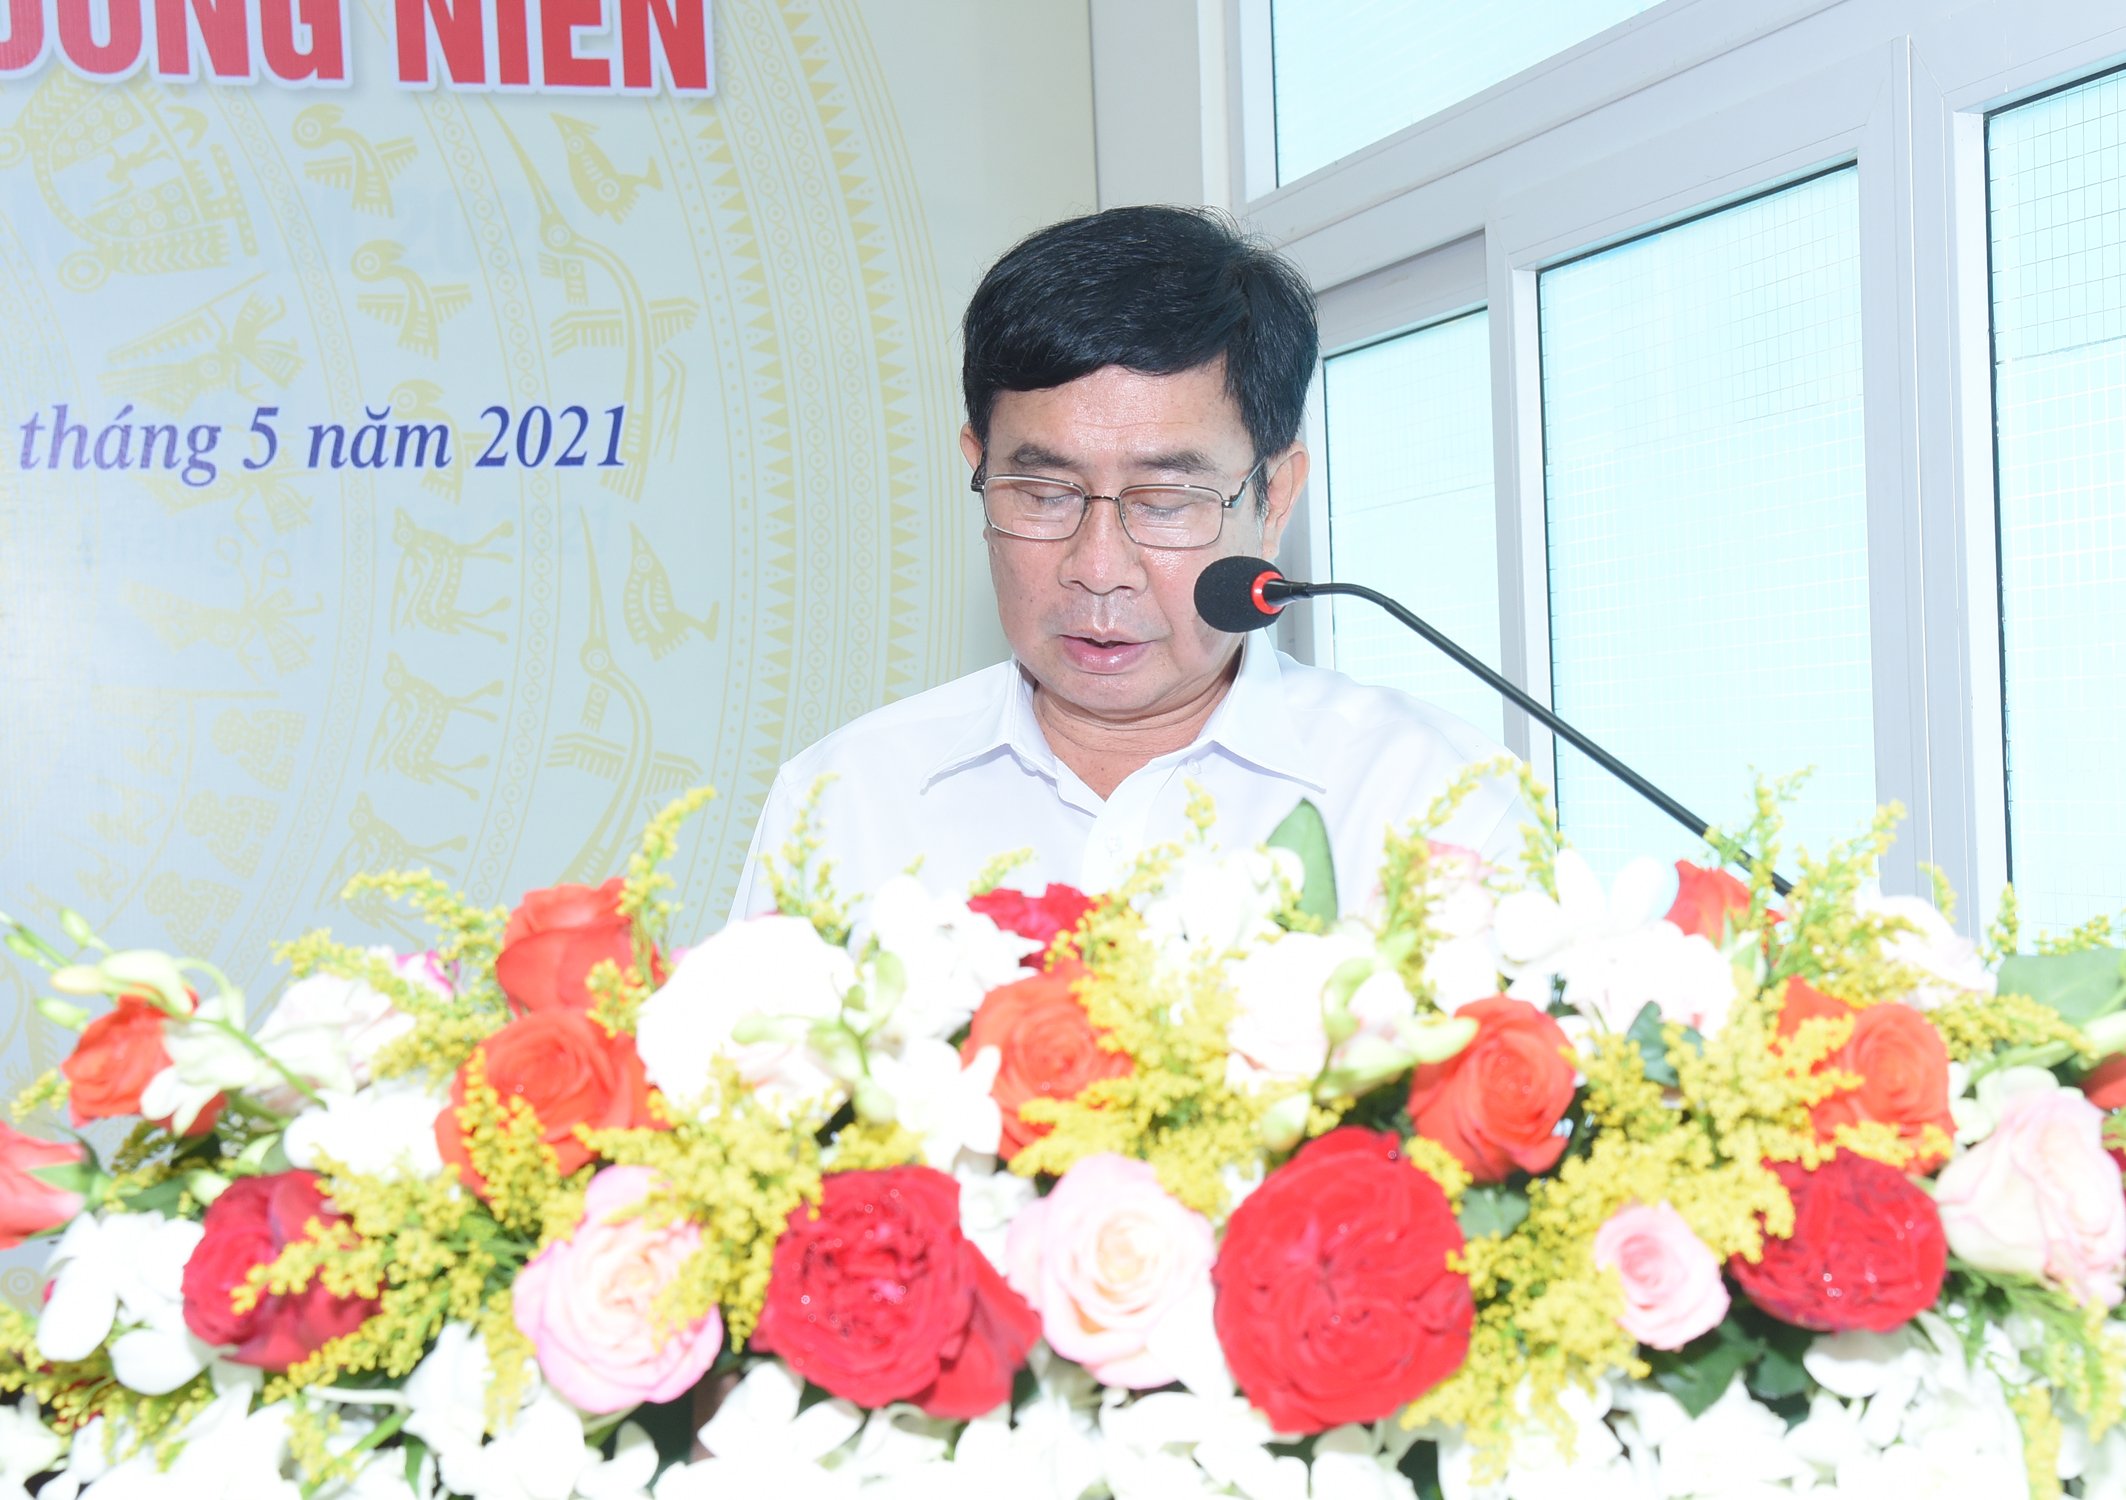 Ông Hà Huệ Hải – TGĐ báo cáo kết quả hoạt động kinh doanh của công ty năm 2020 và phương hướng kinh doanh năm 2021